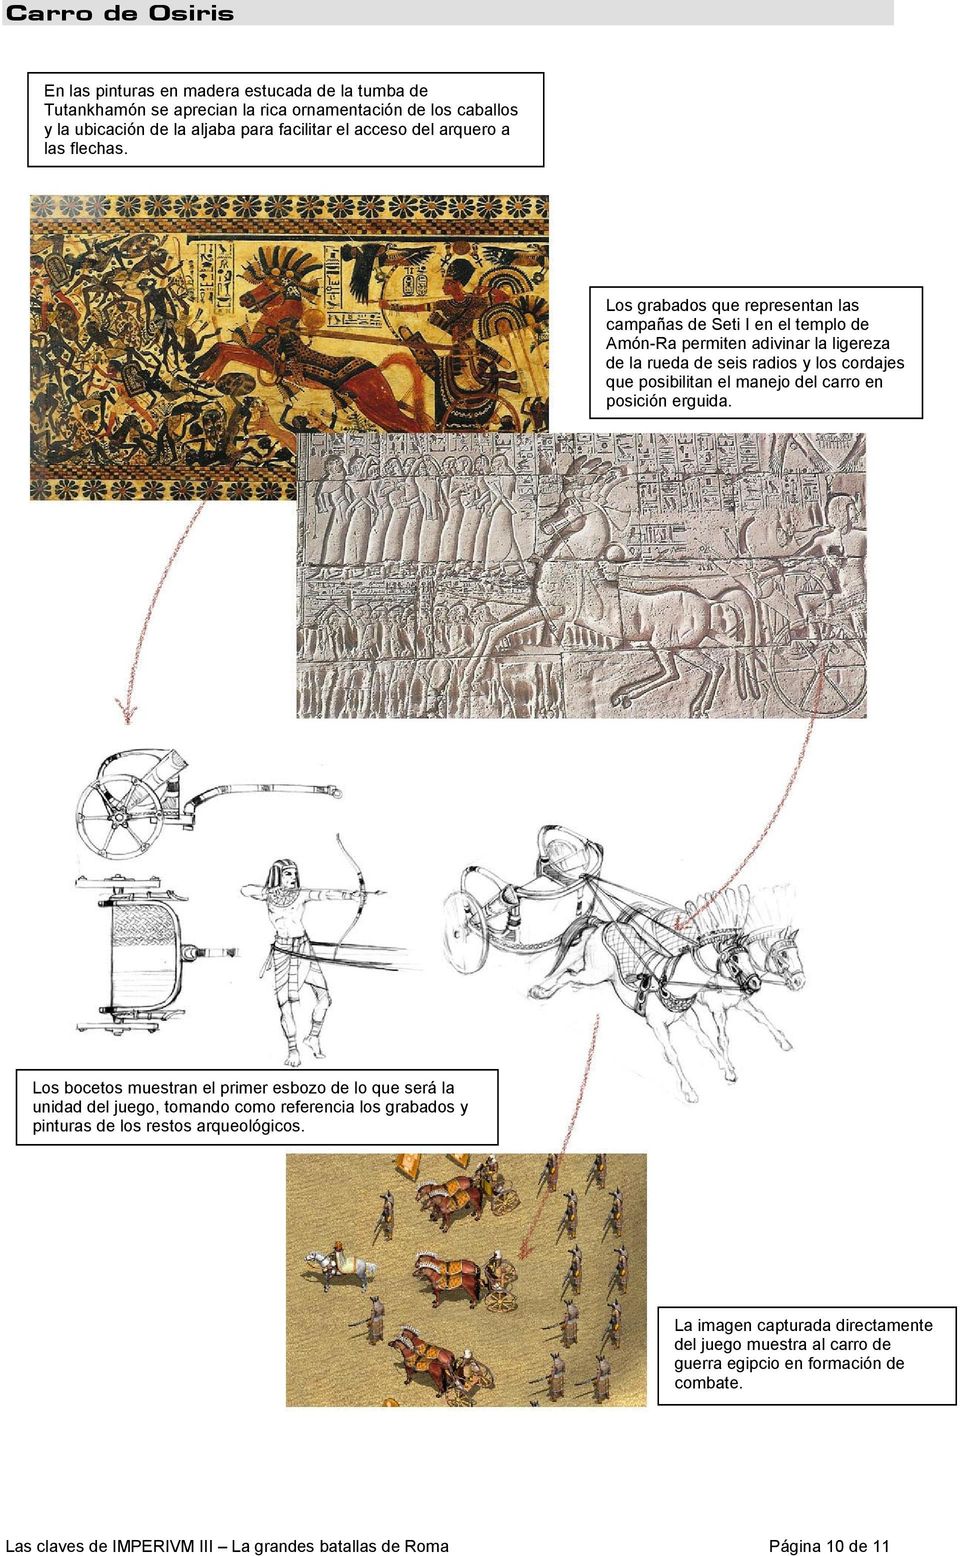 Los grabados que representan las campañas de Seti I en el templo de Amón-Ra permiten adivinar la ligereza de la rueda de seis radios y los cordajes que posibilitan el manejo del carro